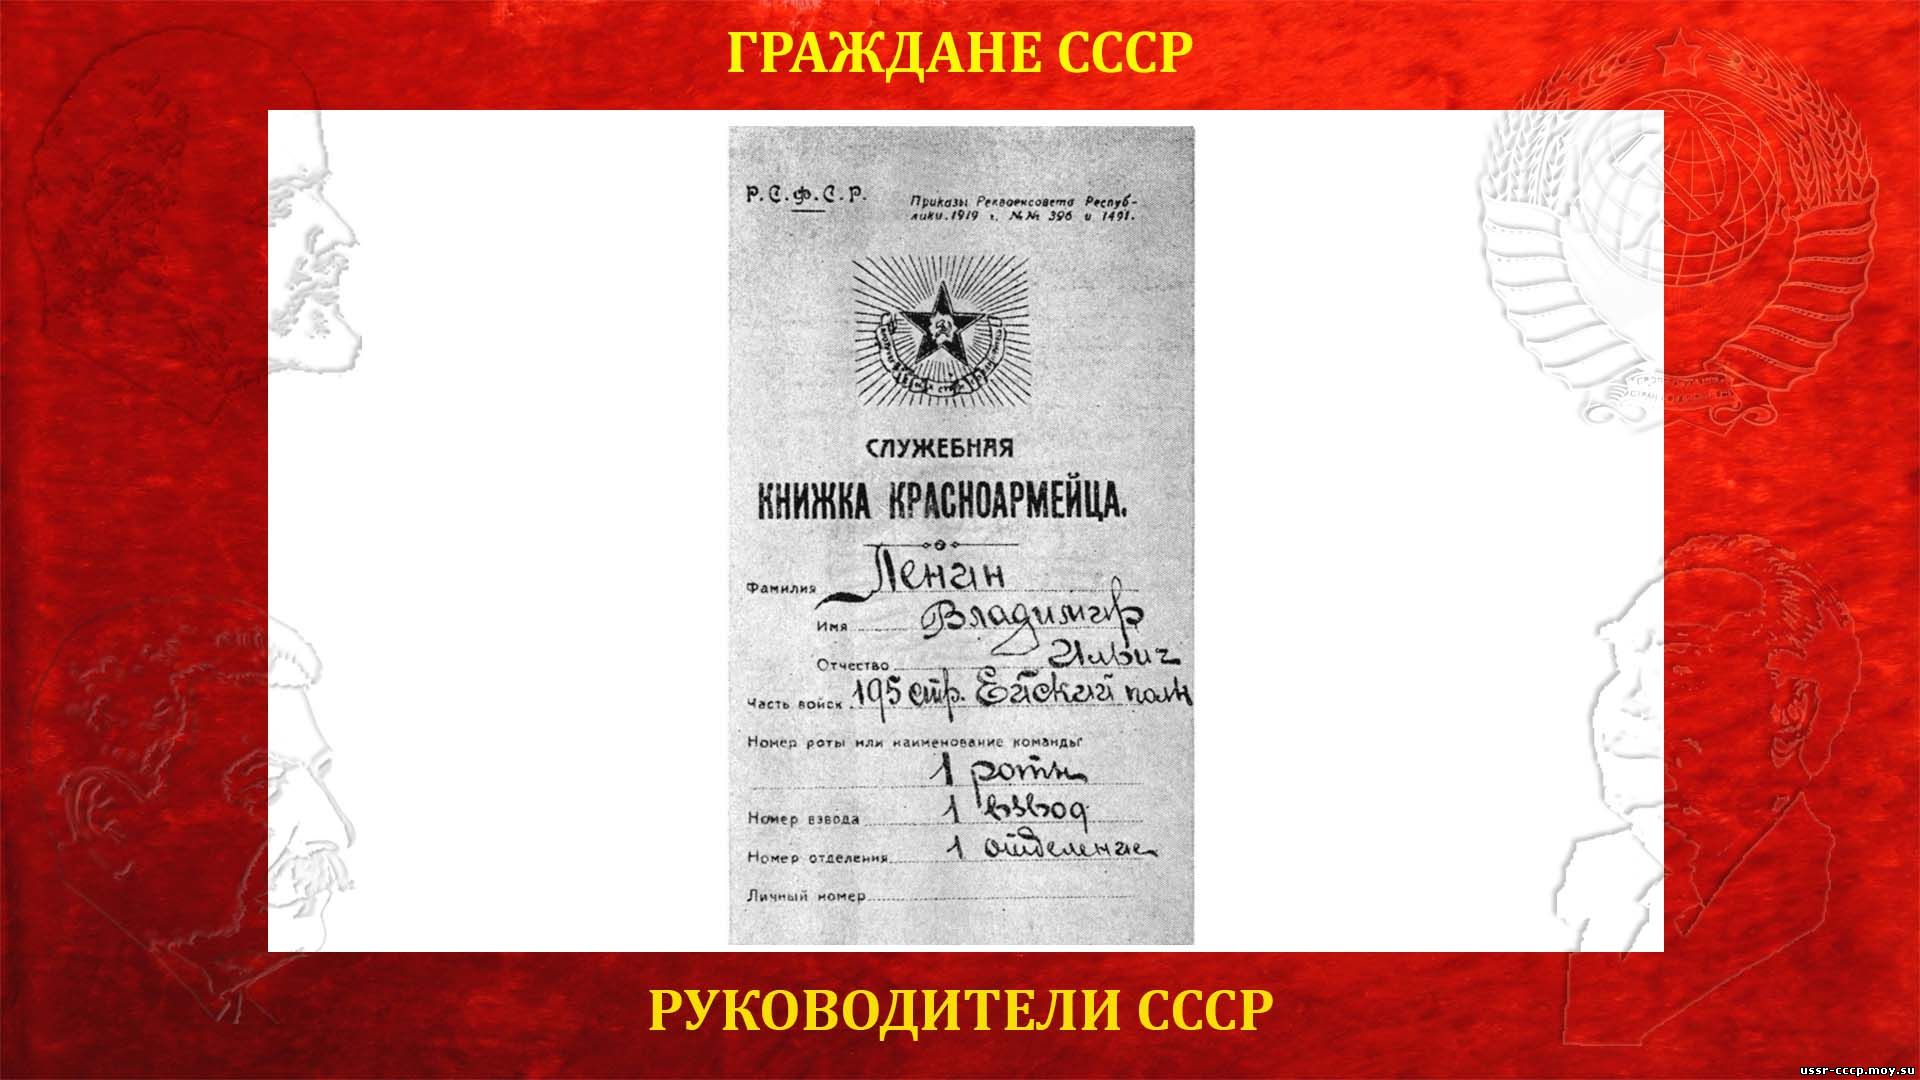 Служебная книжка красноармейца Ленина Владимира Ильича, 1919 год.